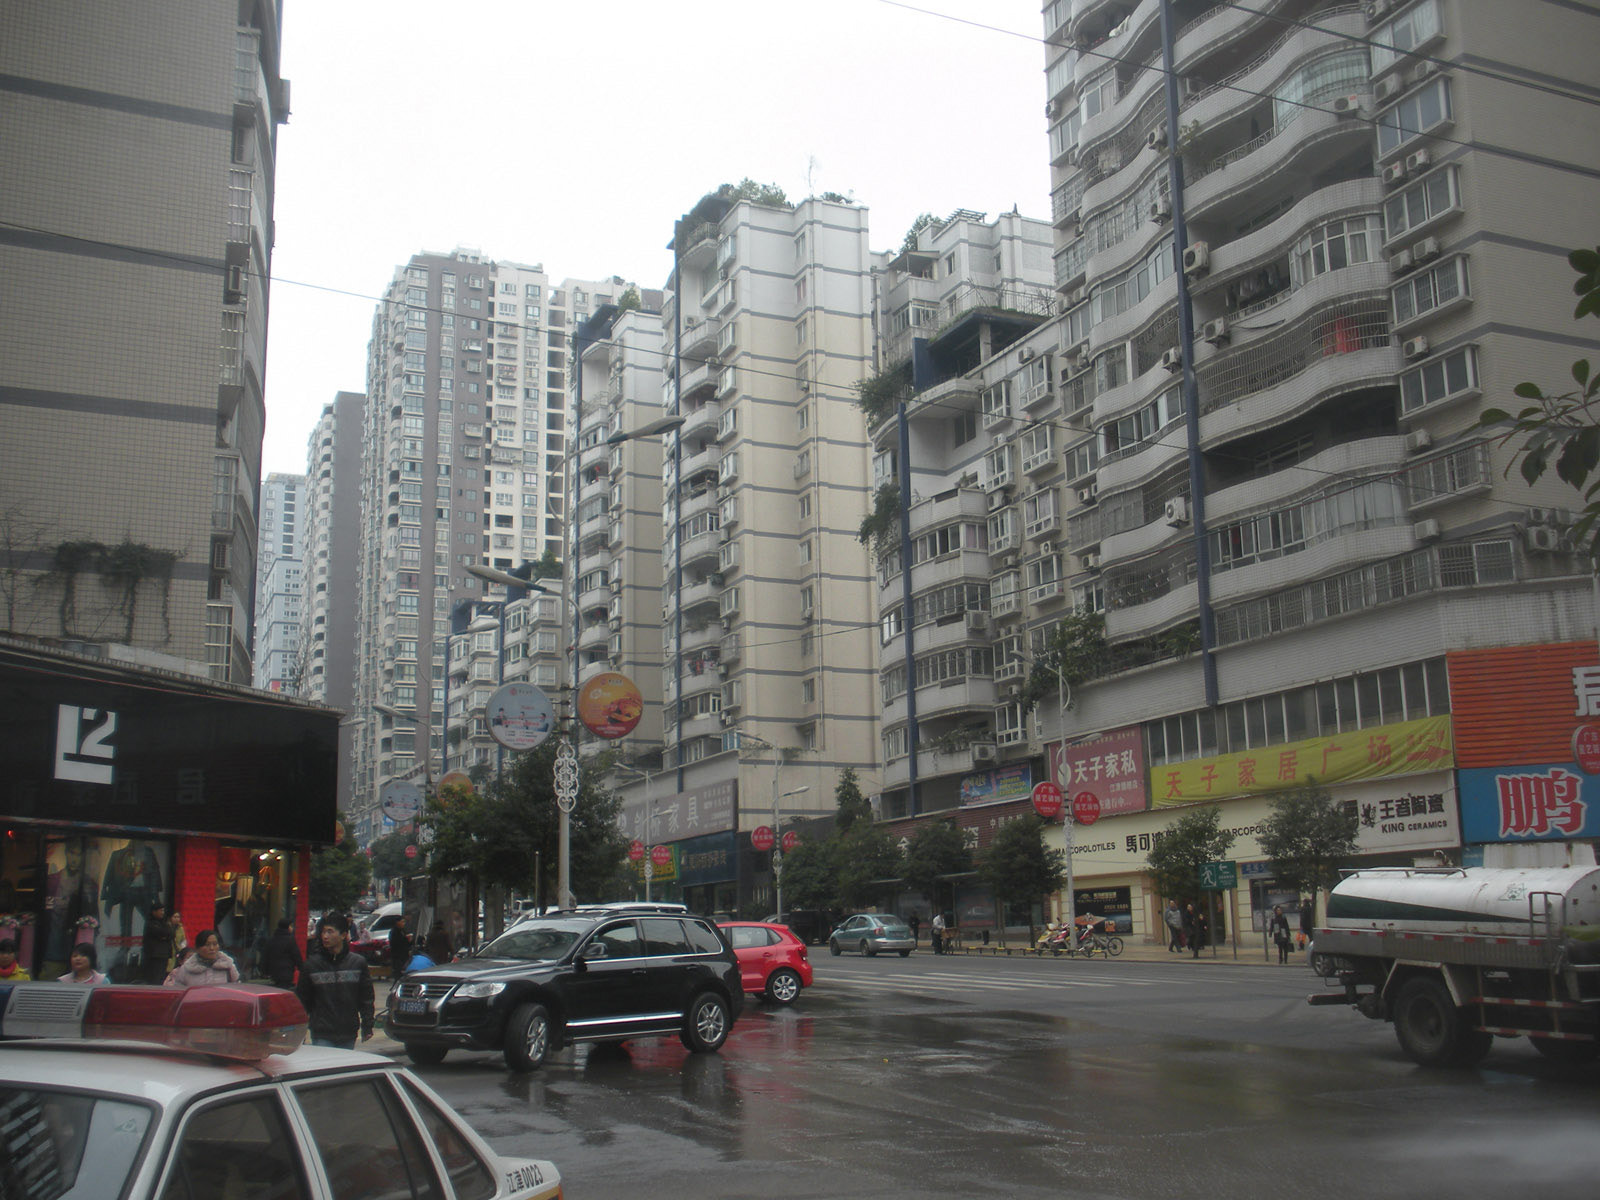 Nikon Coolpix S560 sample photo. Chongqing jiangjin%district%street%in%chongqing x photography